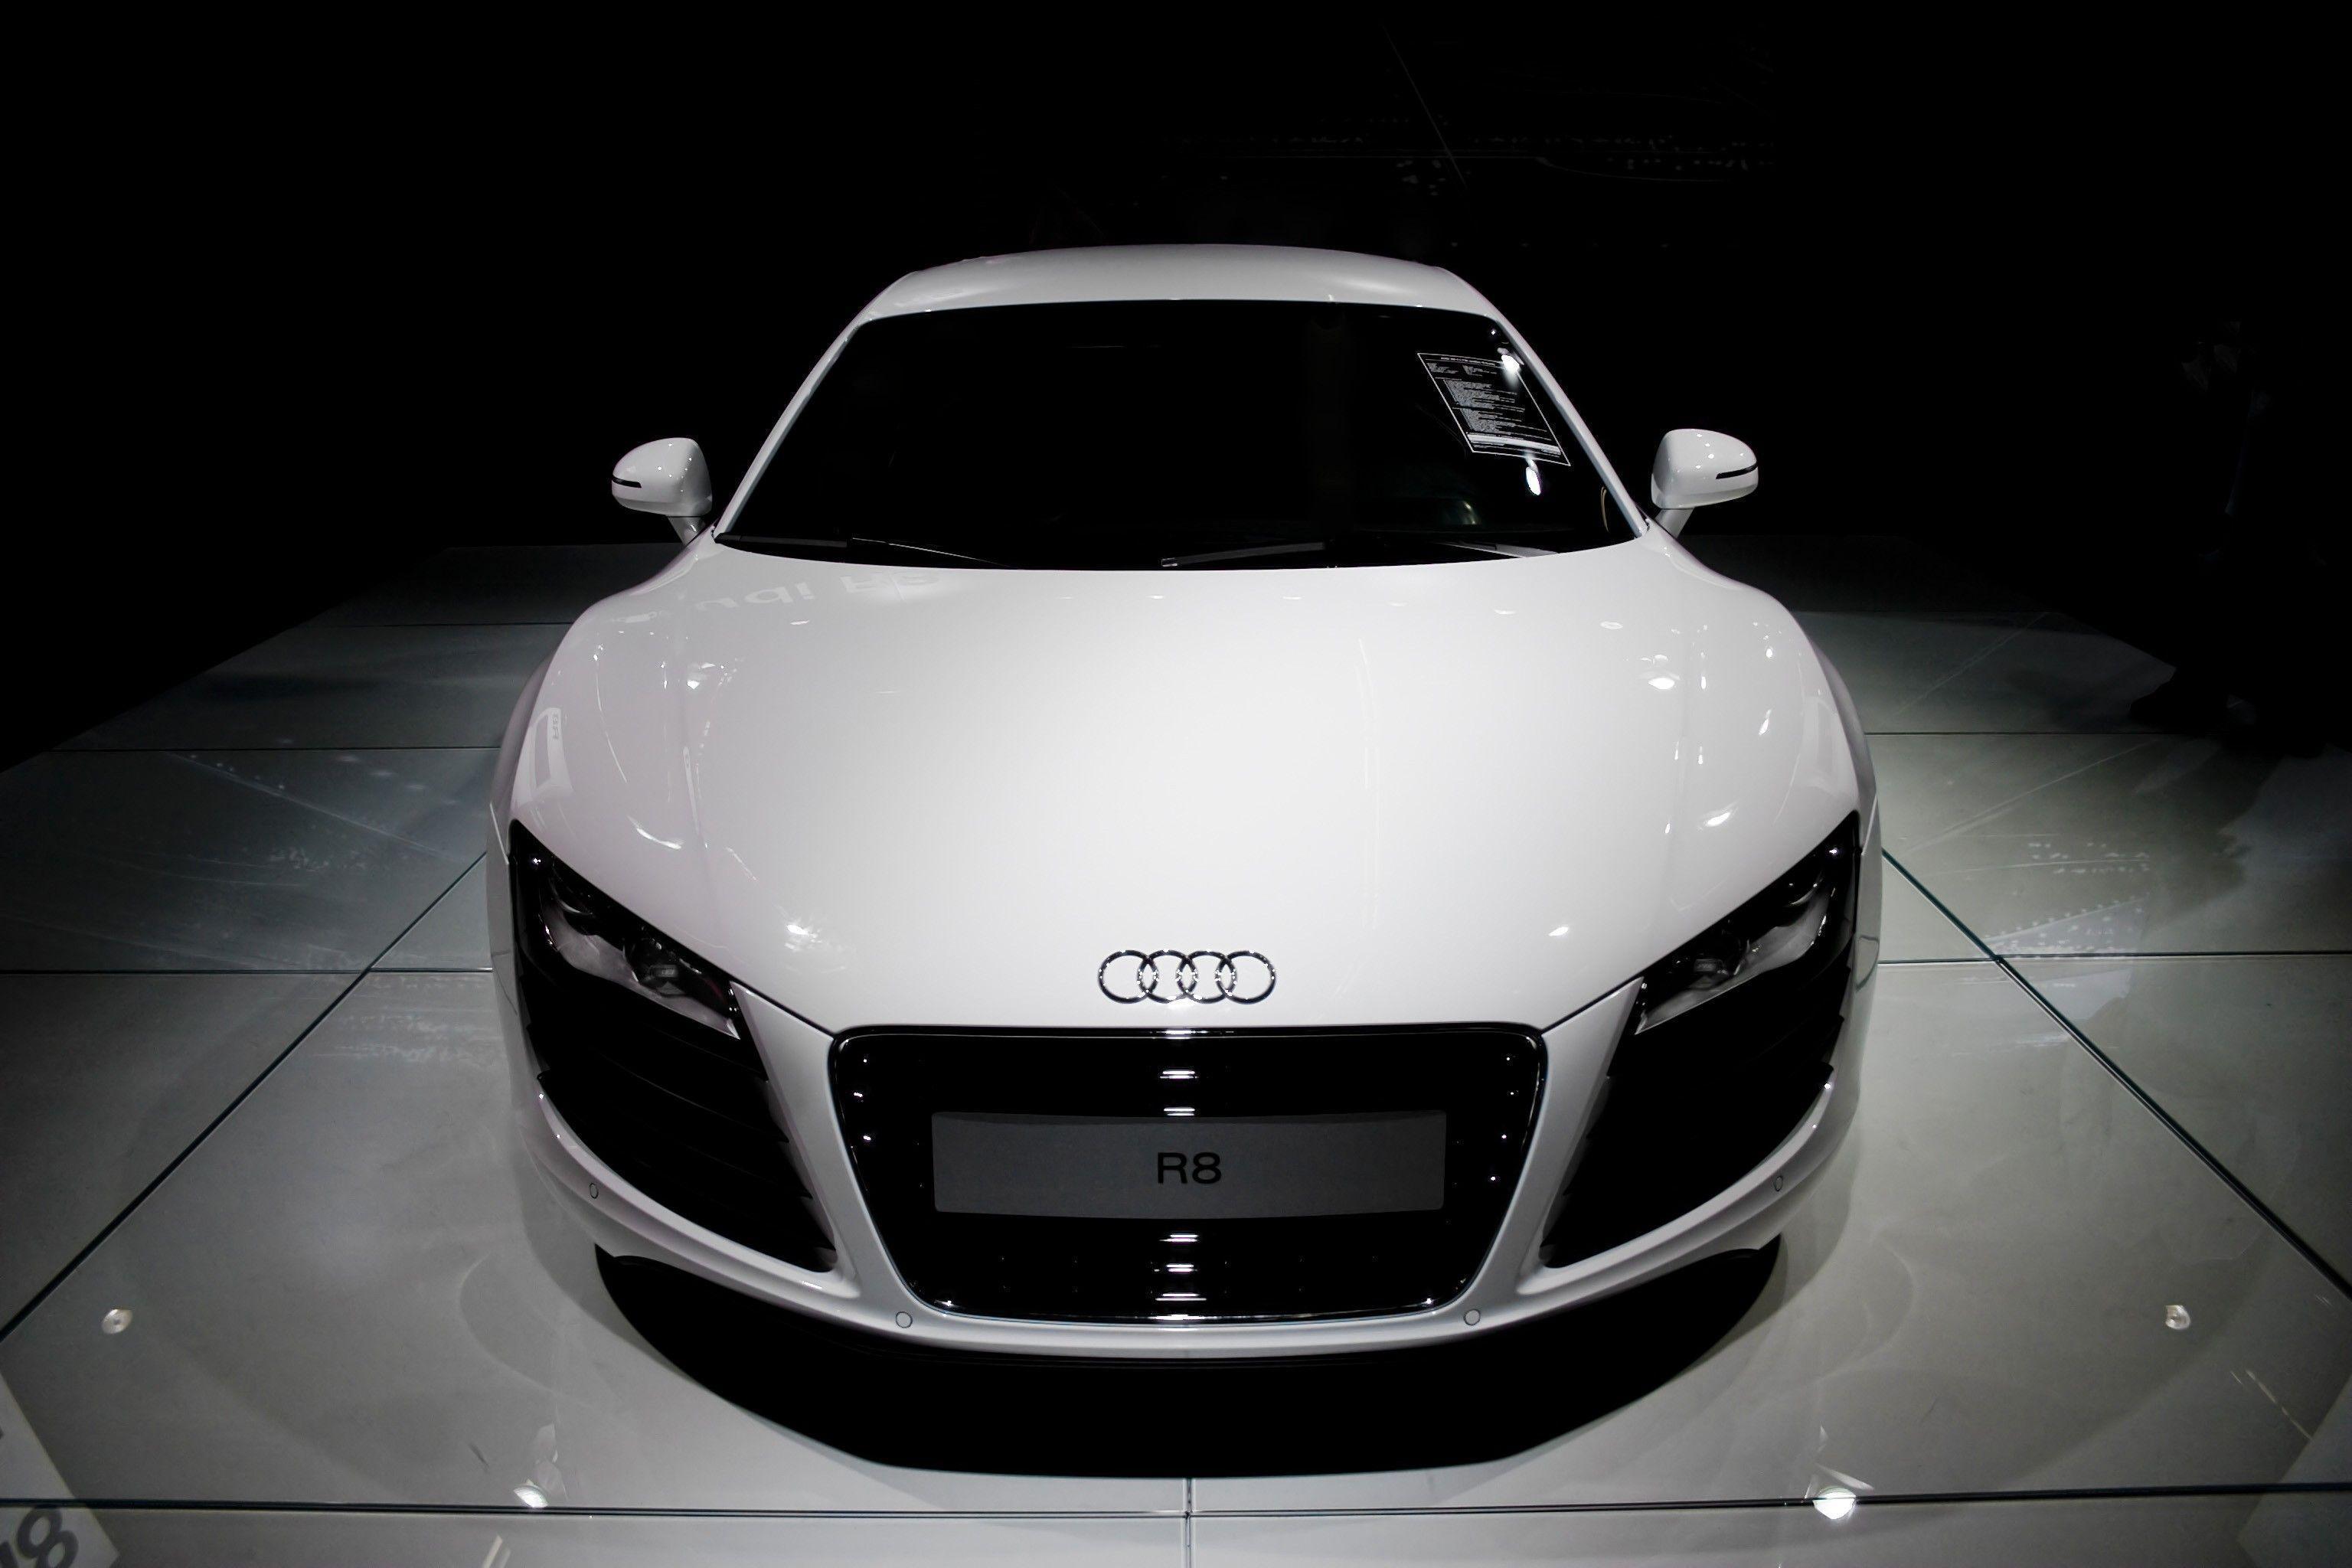 Audi R8 Black Hd Wallpapers 1080p